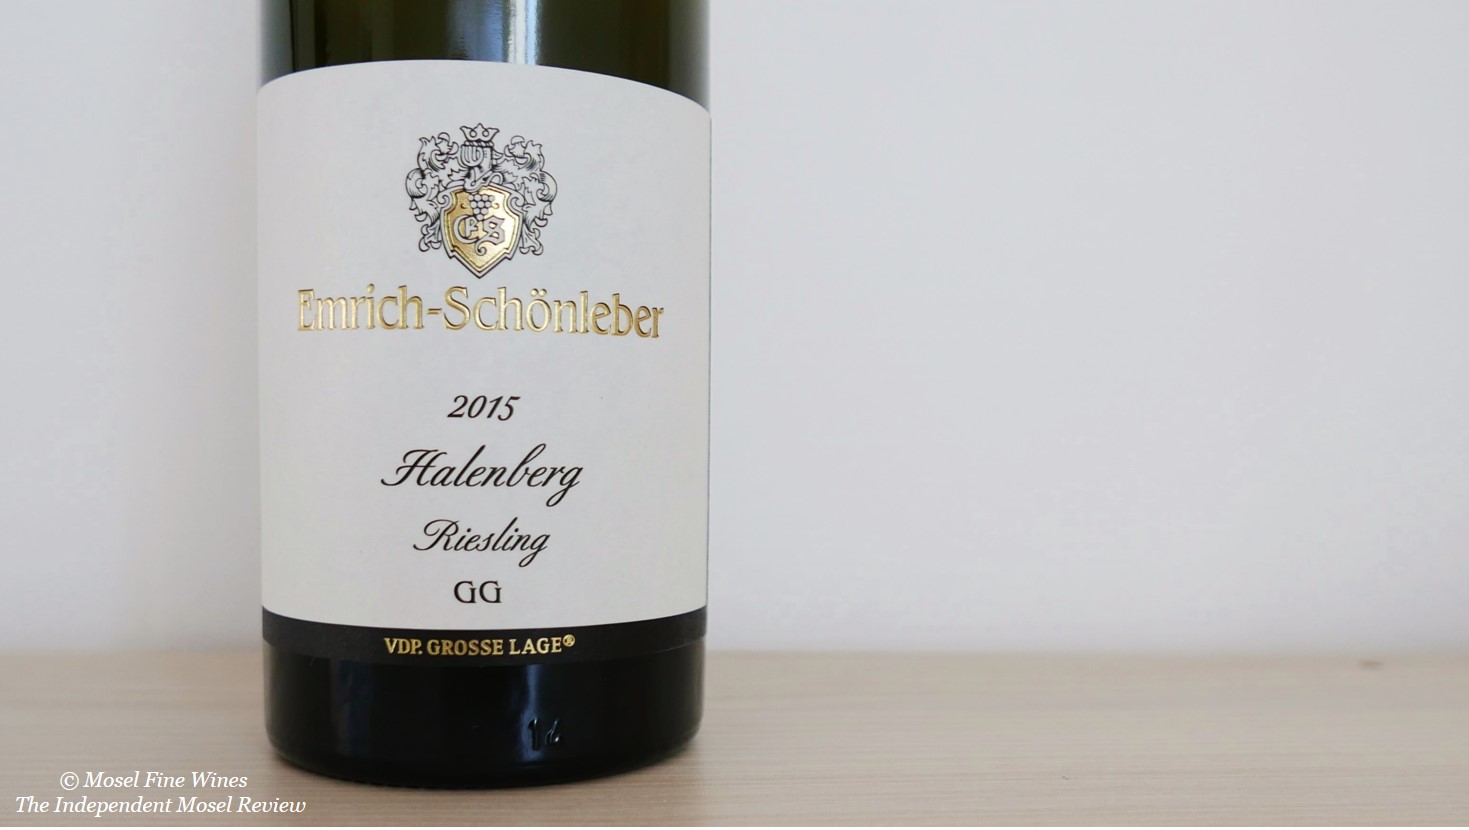 Weingut Emrich-Schönleber | Monzinger Halenberg Riesling 2015 | Label